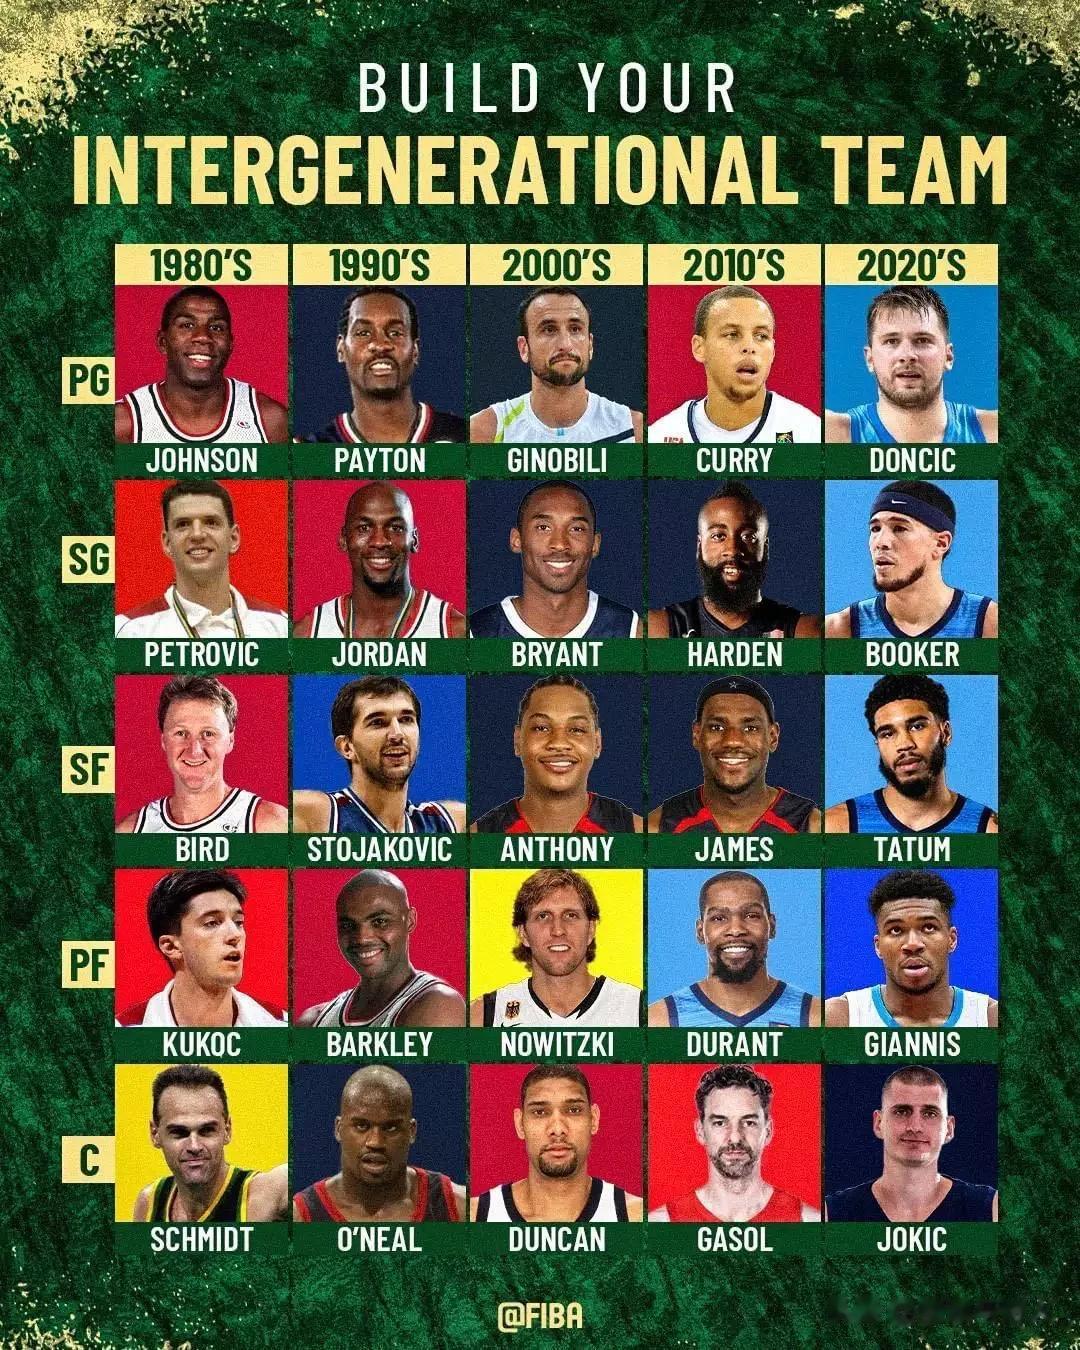 国际篮联晒图让大家组建世界最佳阵容，你会选哪五位球员呢？ ​​​
1、控球后卫:(1)